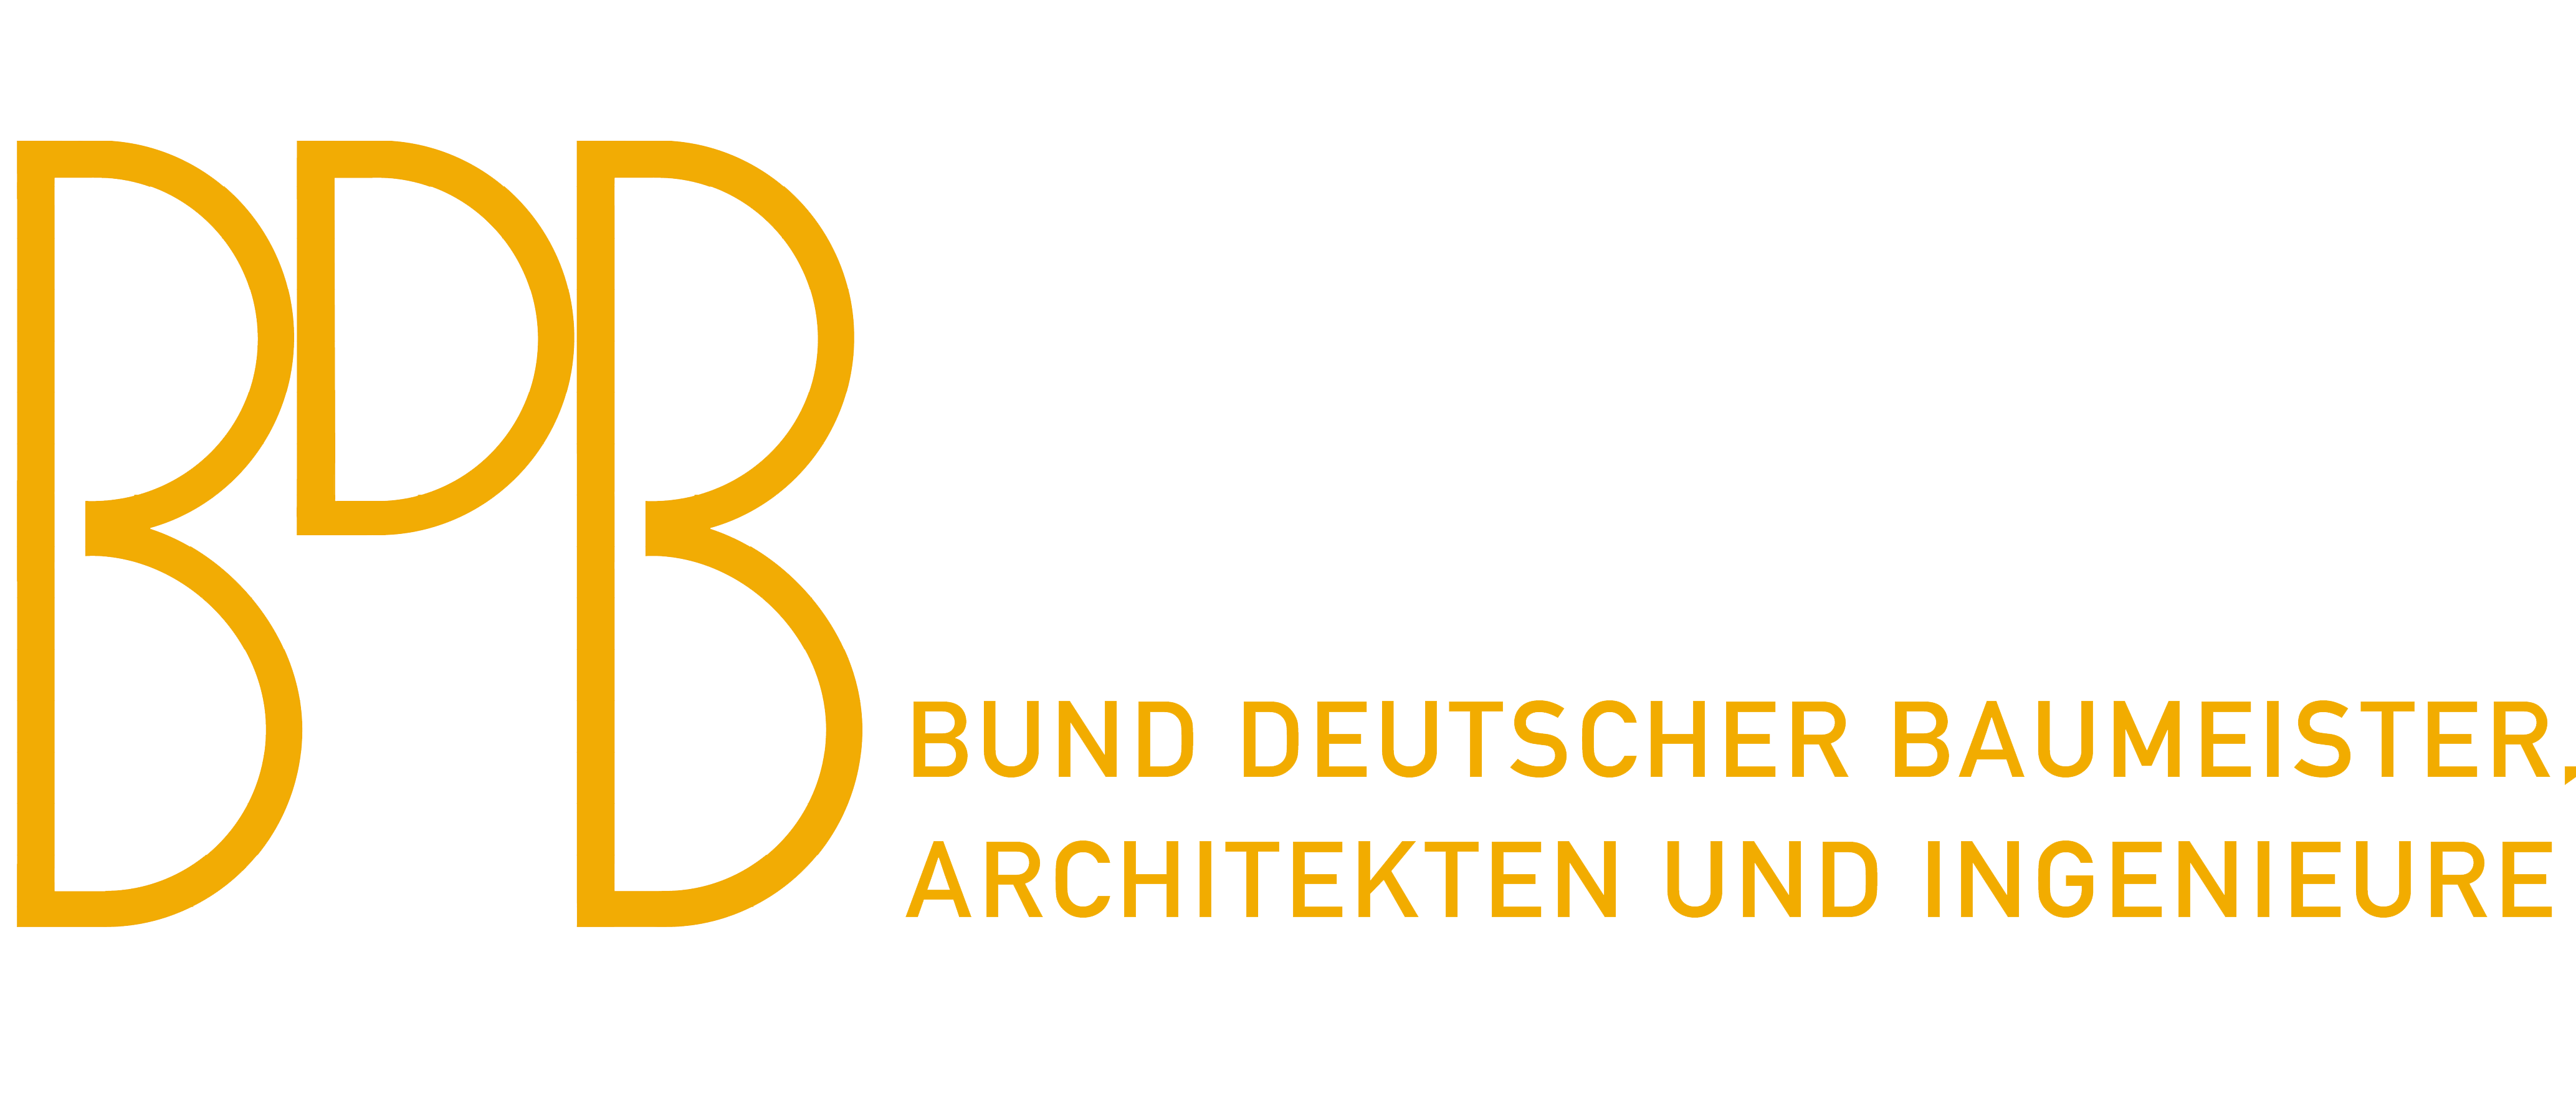 Bund Deutscher Baumeister Intranet